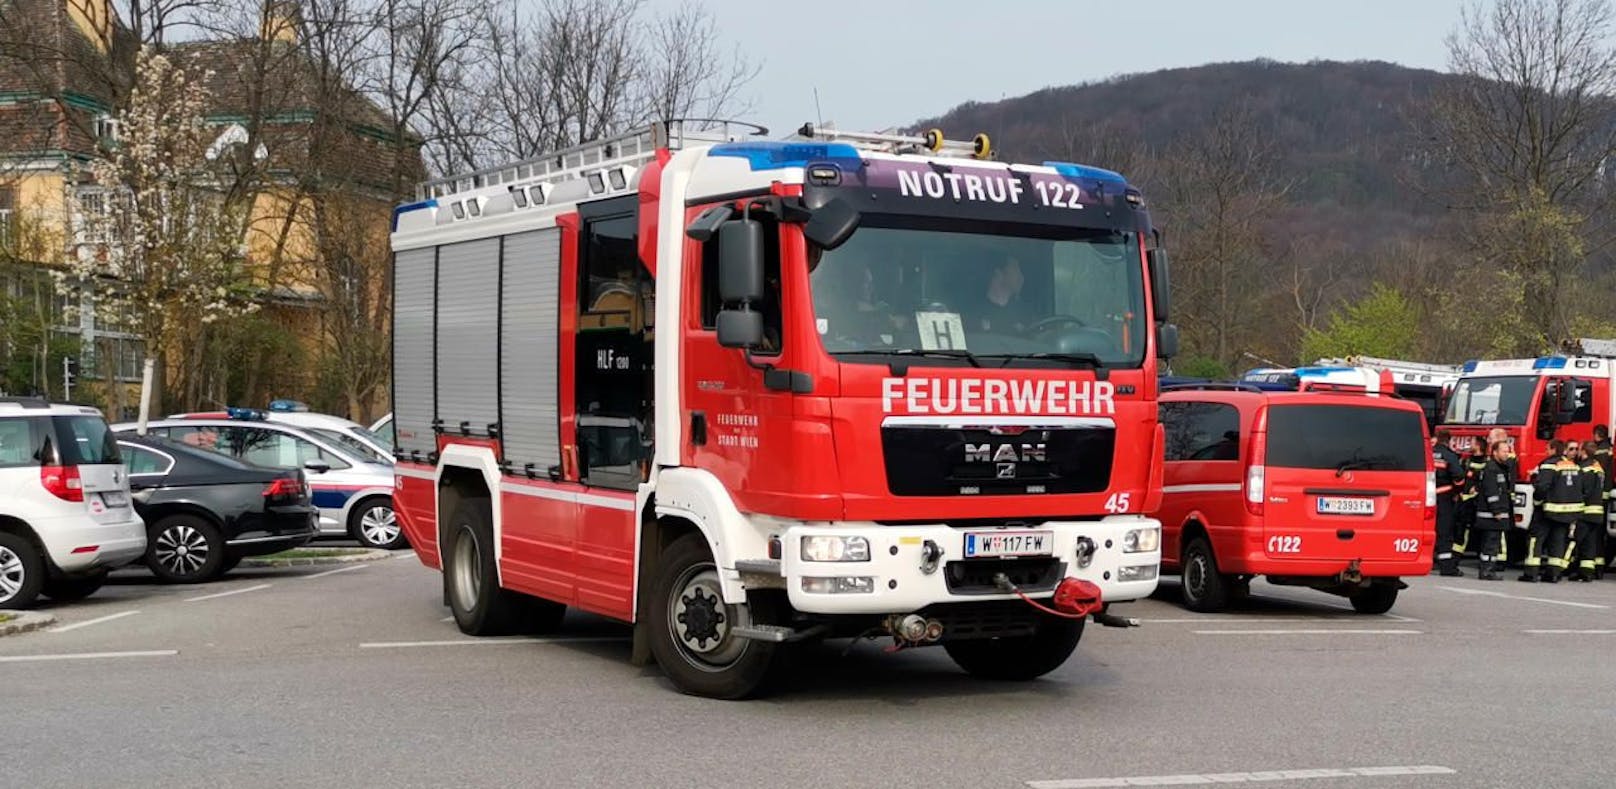 Einheitliches Kennzeichen "FW" für Feuerwehr